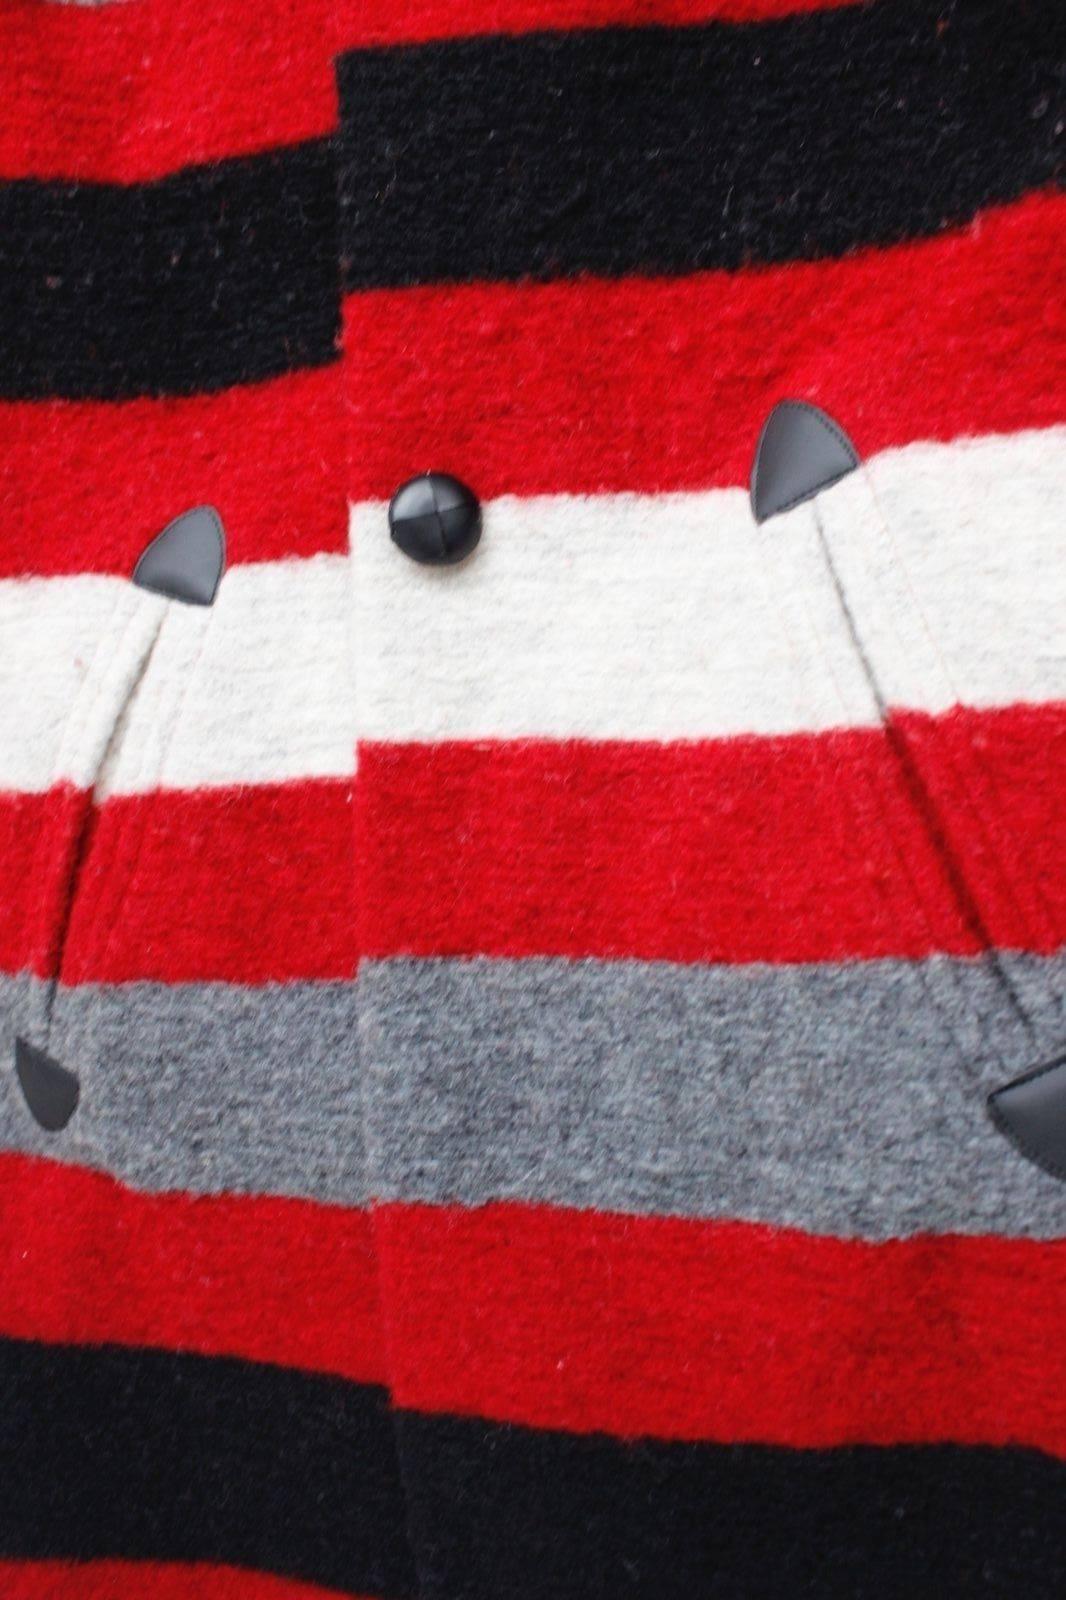  Isabel Marant Gabriel blanket-striped Oversized Red Black Coat 34 uk 6-8  1